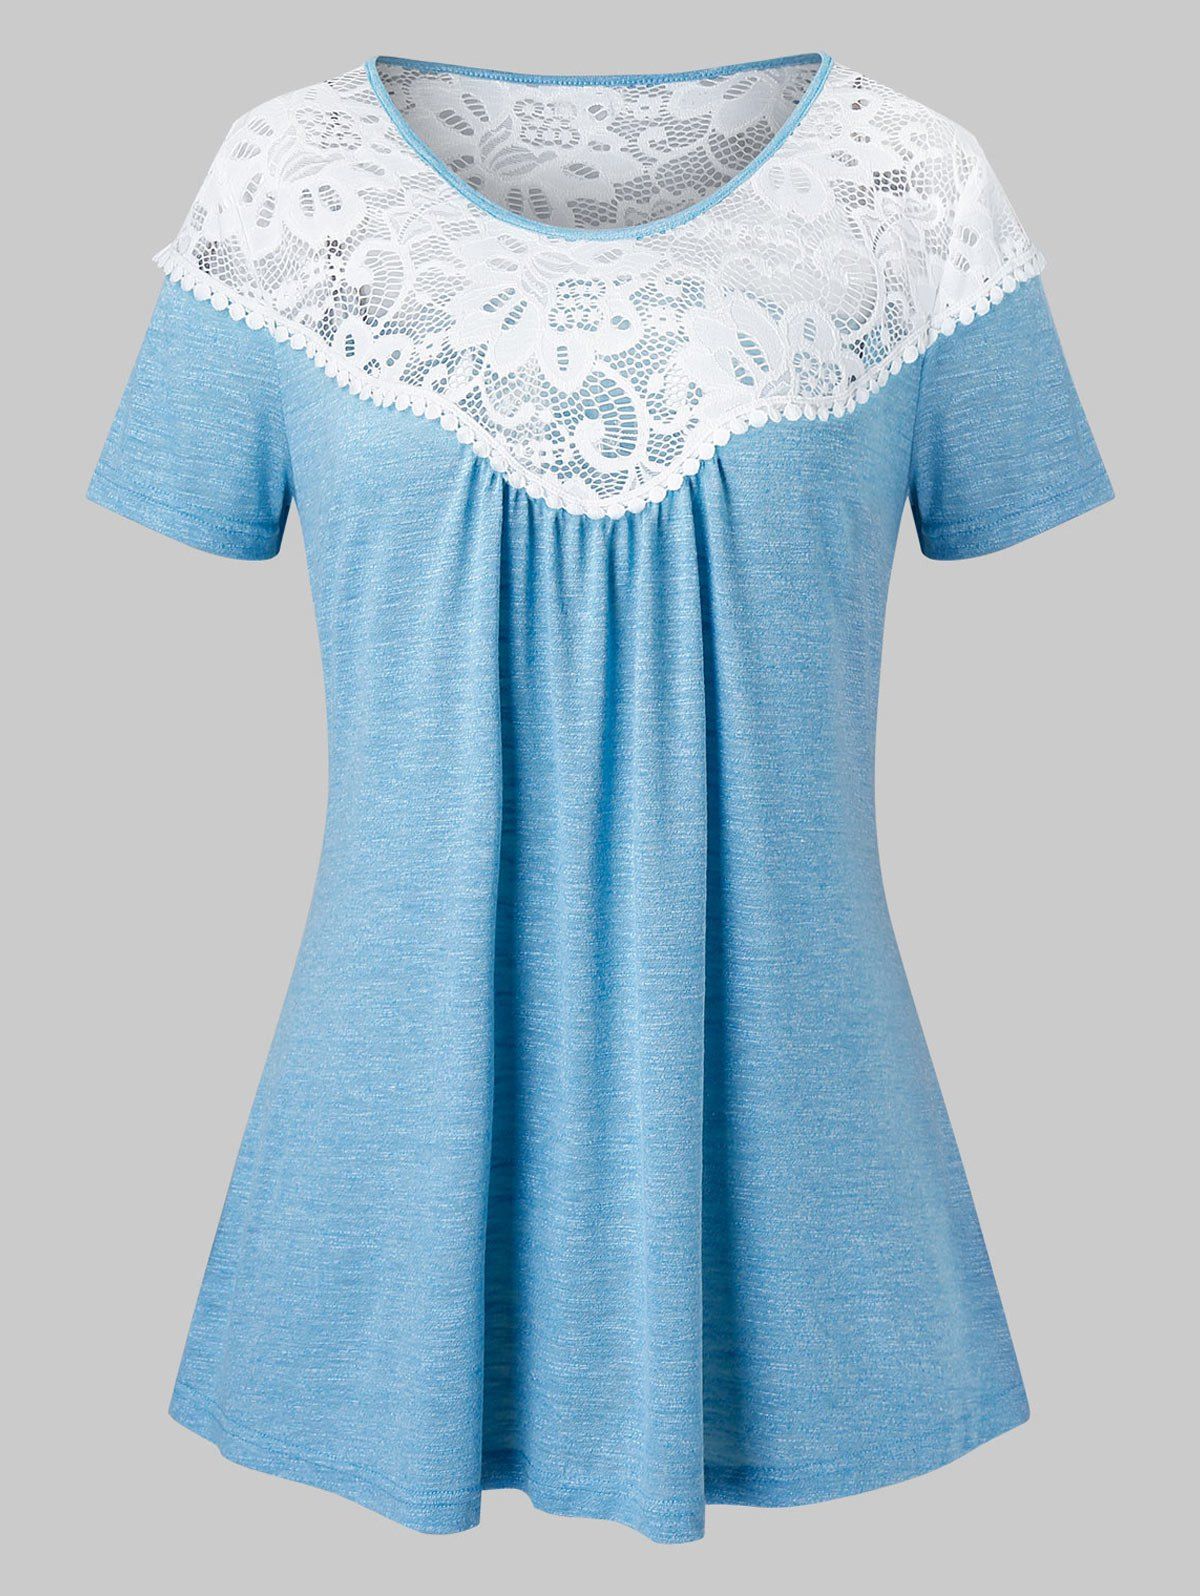 Plus Size Lace Yoke Two Tone T-shirt - LIGHT BLUE L